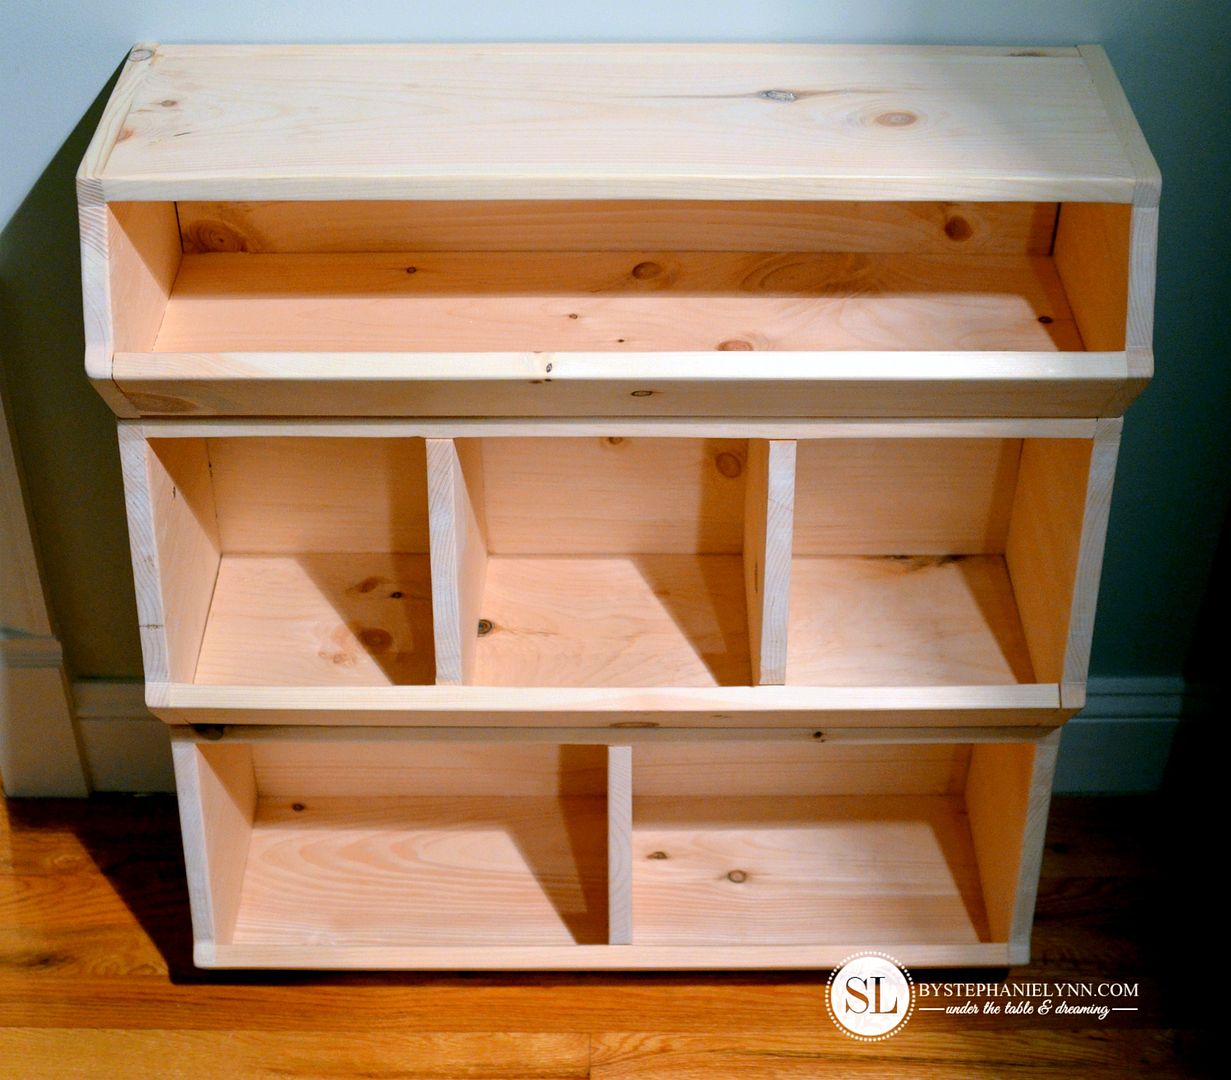 How to Build a Wooden Storage Bin Organizer